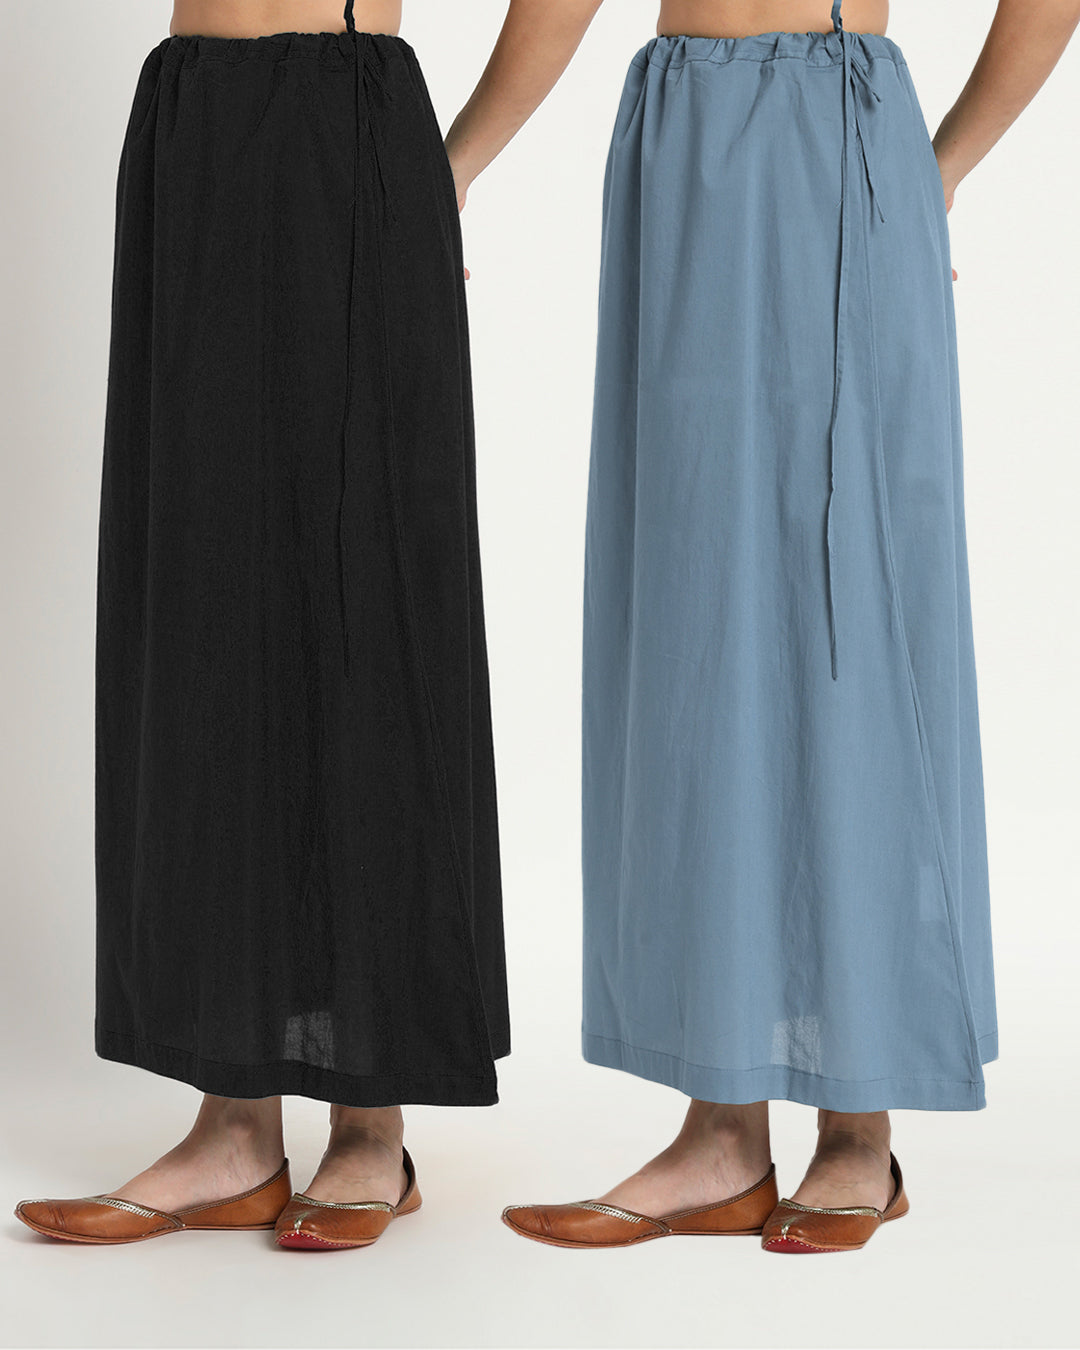 Combo: Black & Blue Dawn Peekaboo Petticoat- Set of 2